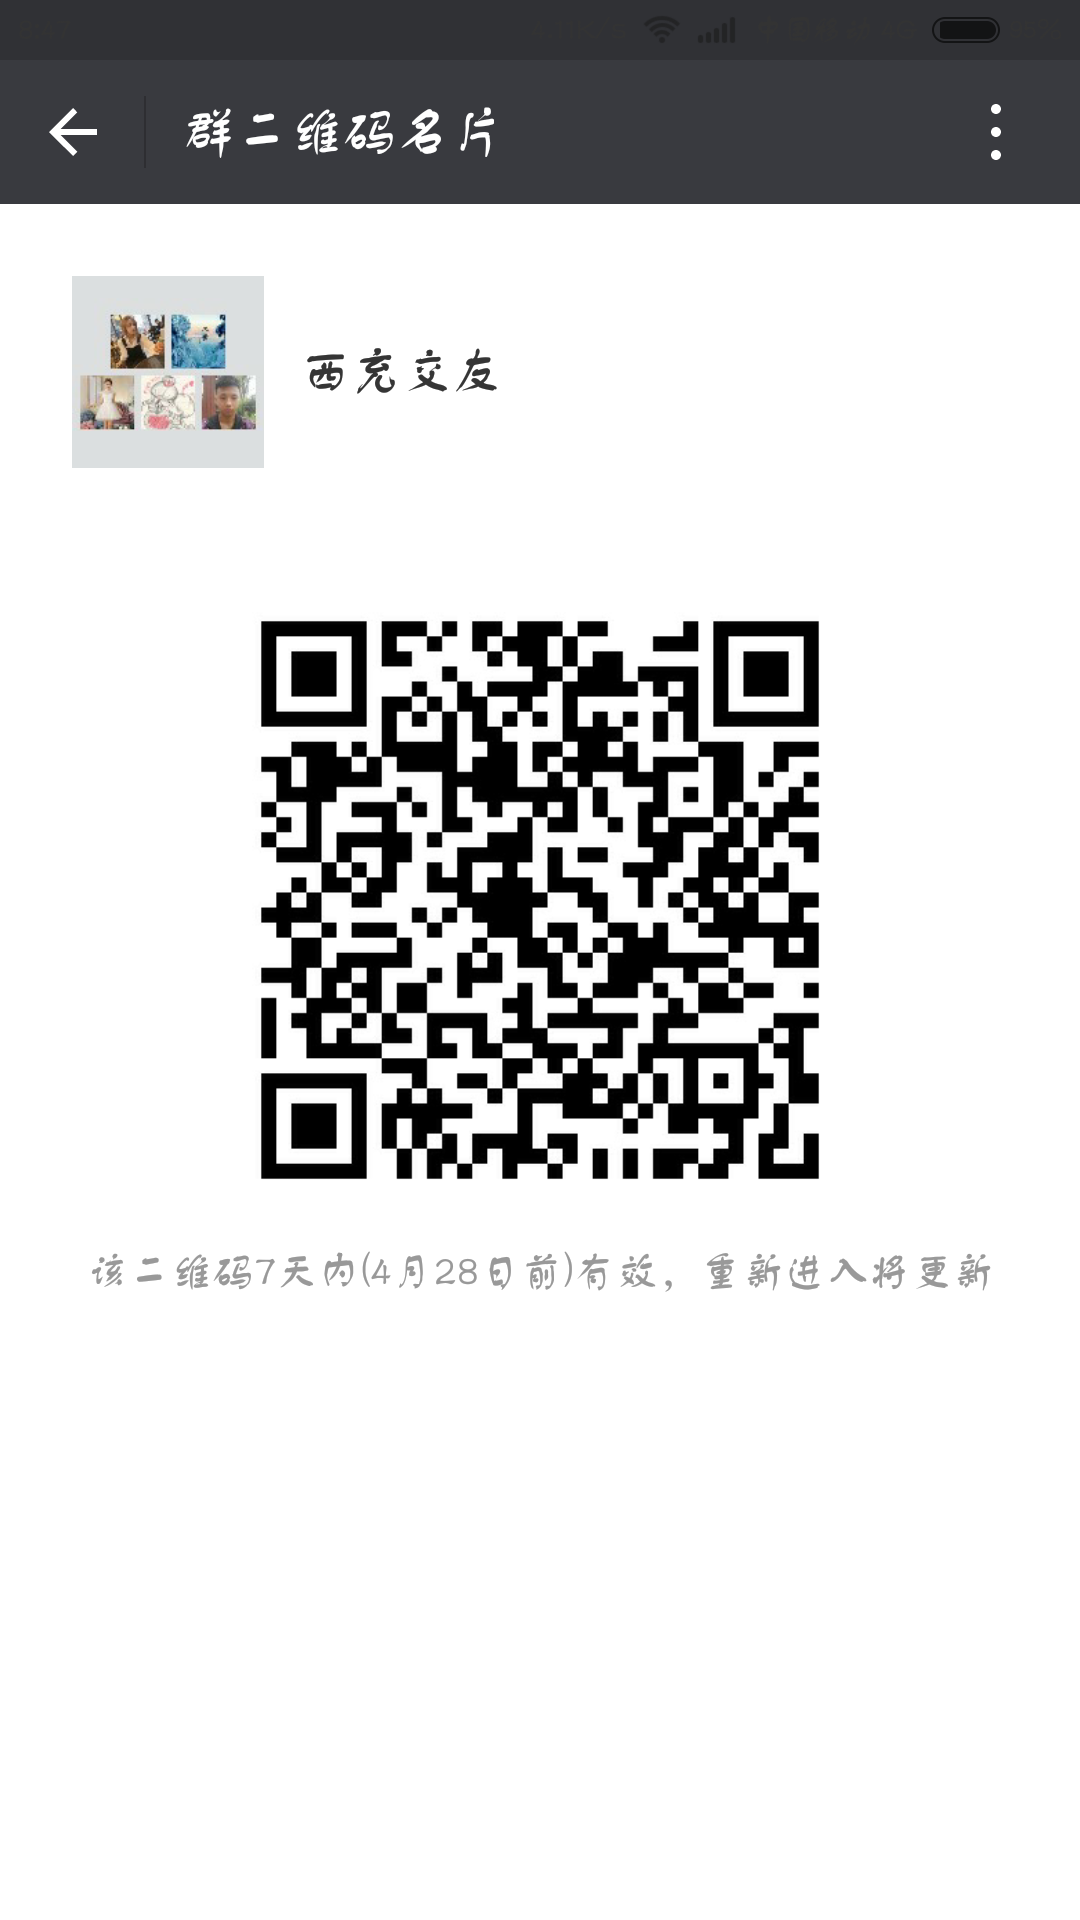 Screenshot_2016-04-21-08-47-35_com.tencent.mm.png